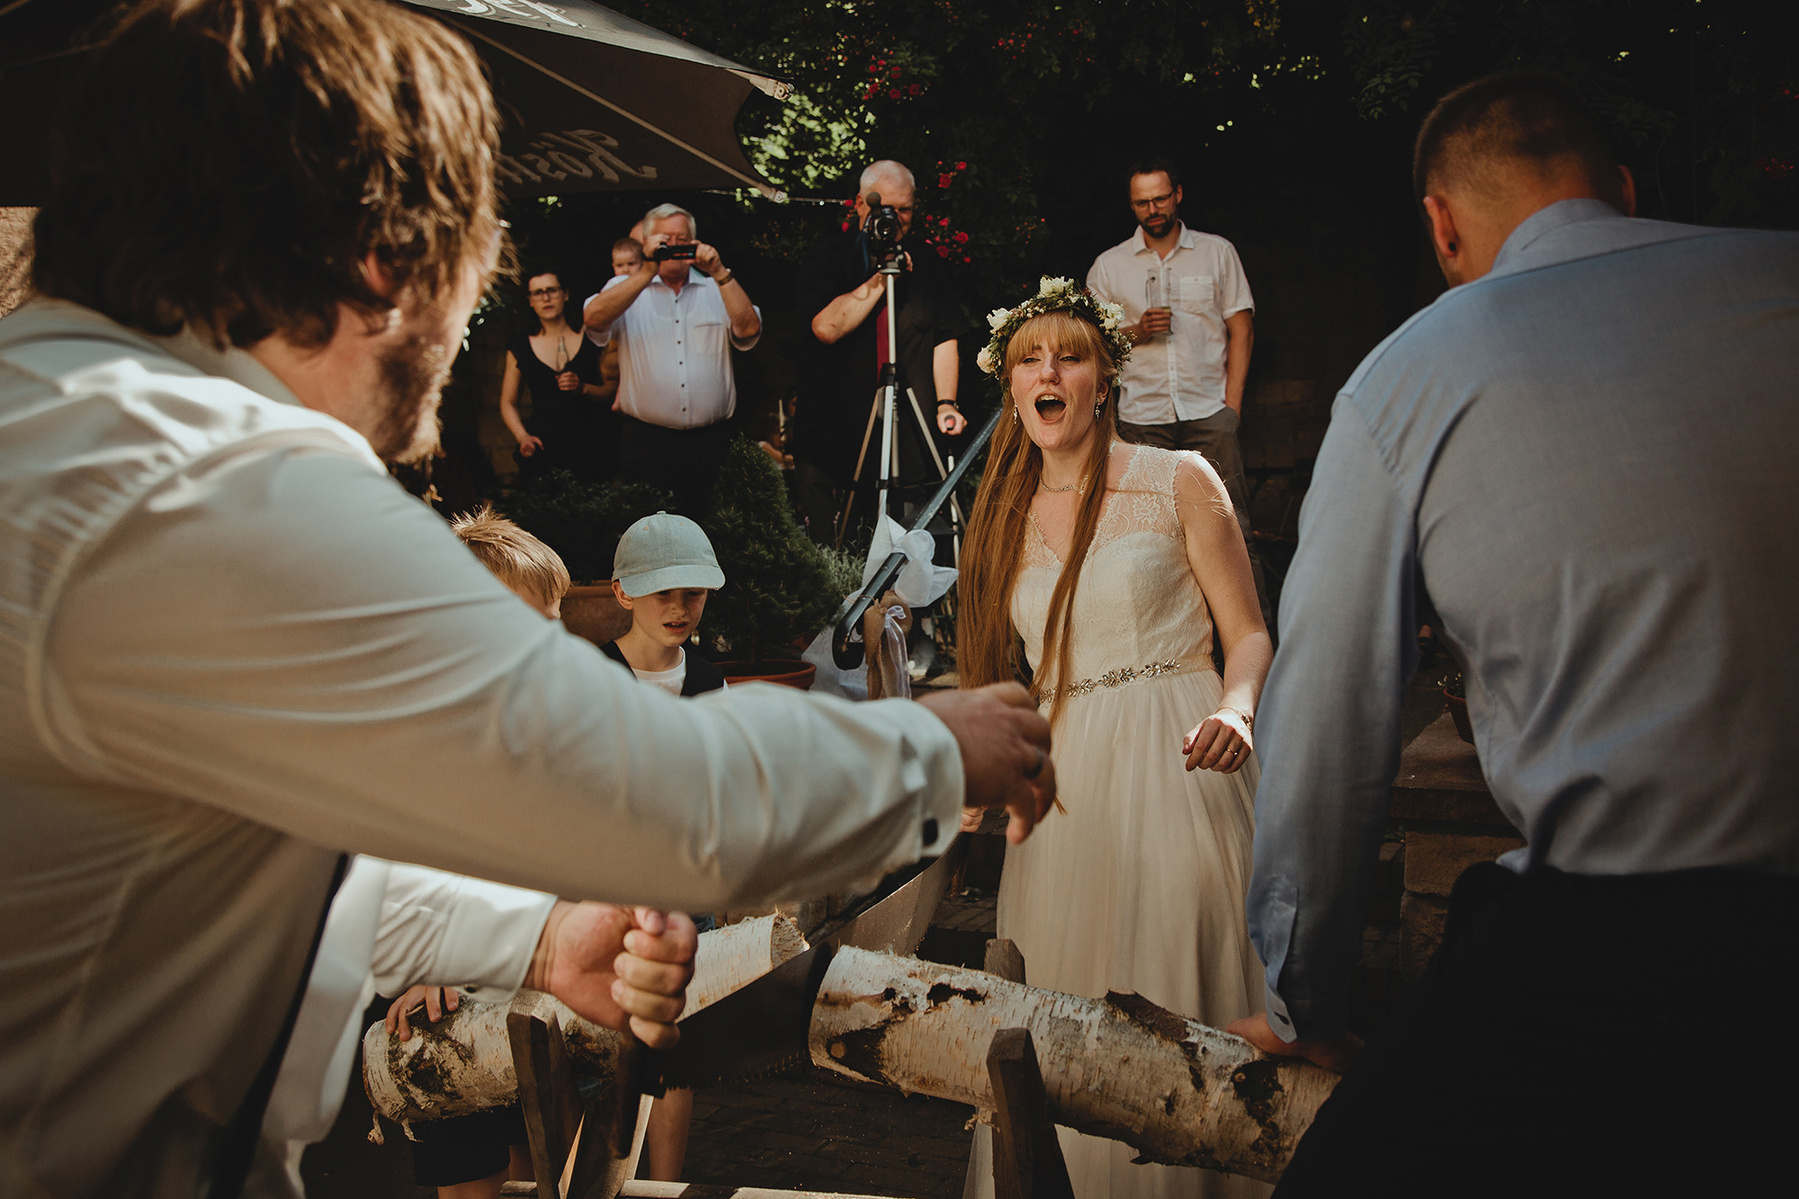 Die Braut jubelt nachdem der Baumstamm zersägt wurde. Ungestelltes Hochzeitsfoto von einer Fotografin in Weißenfels.